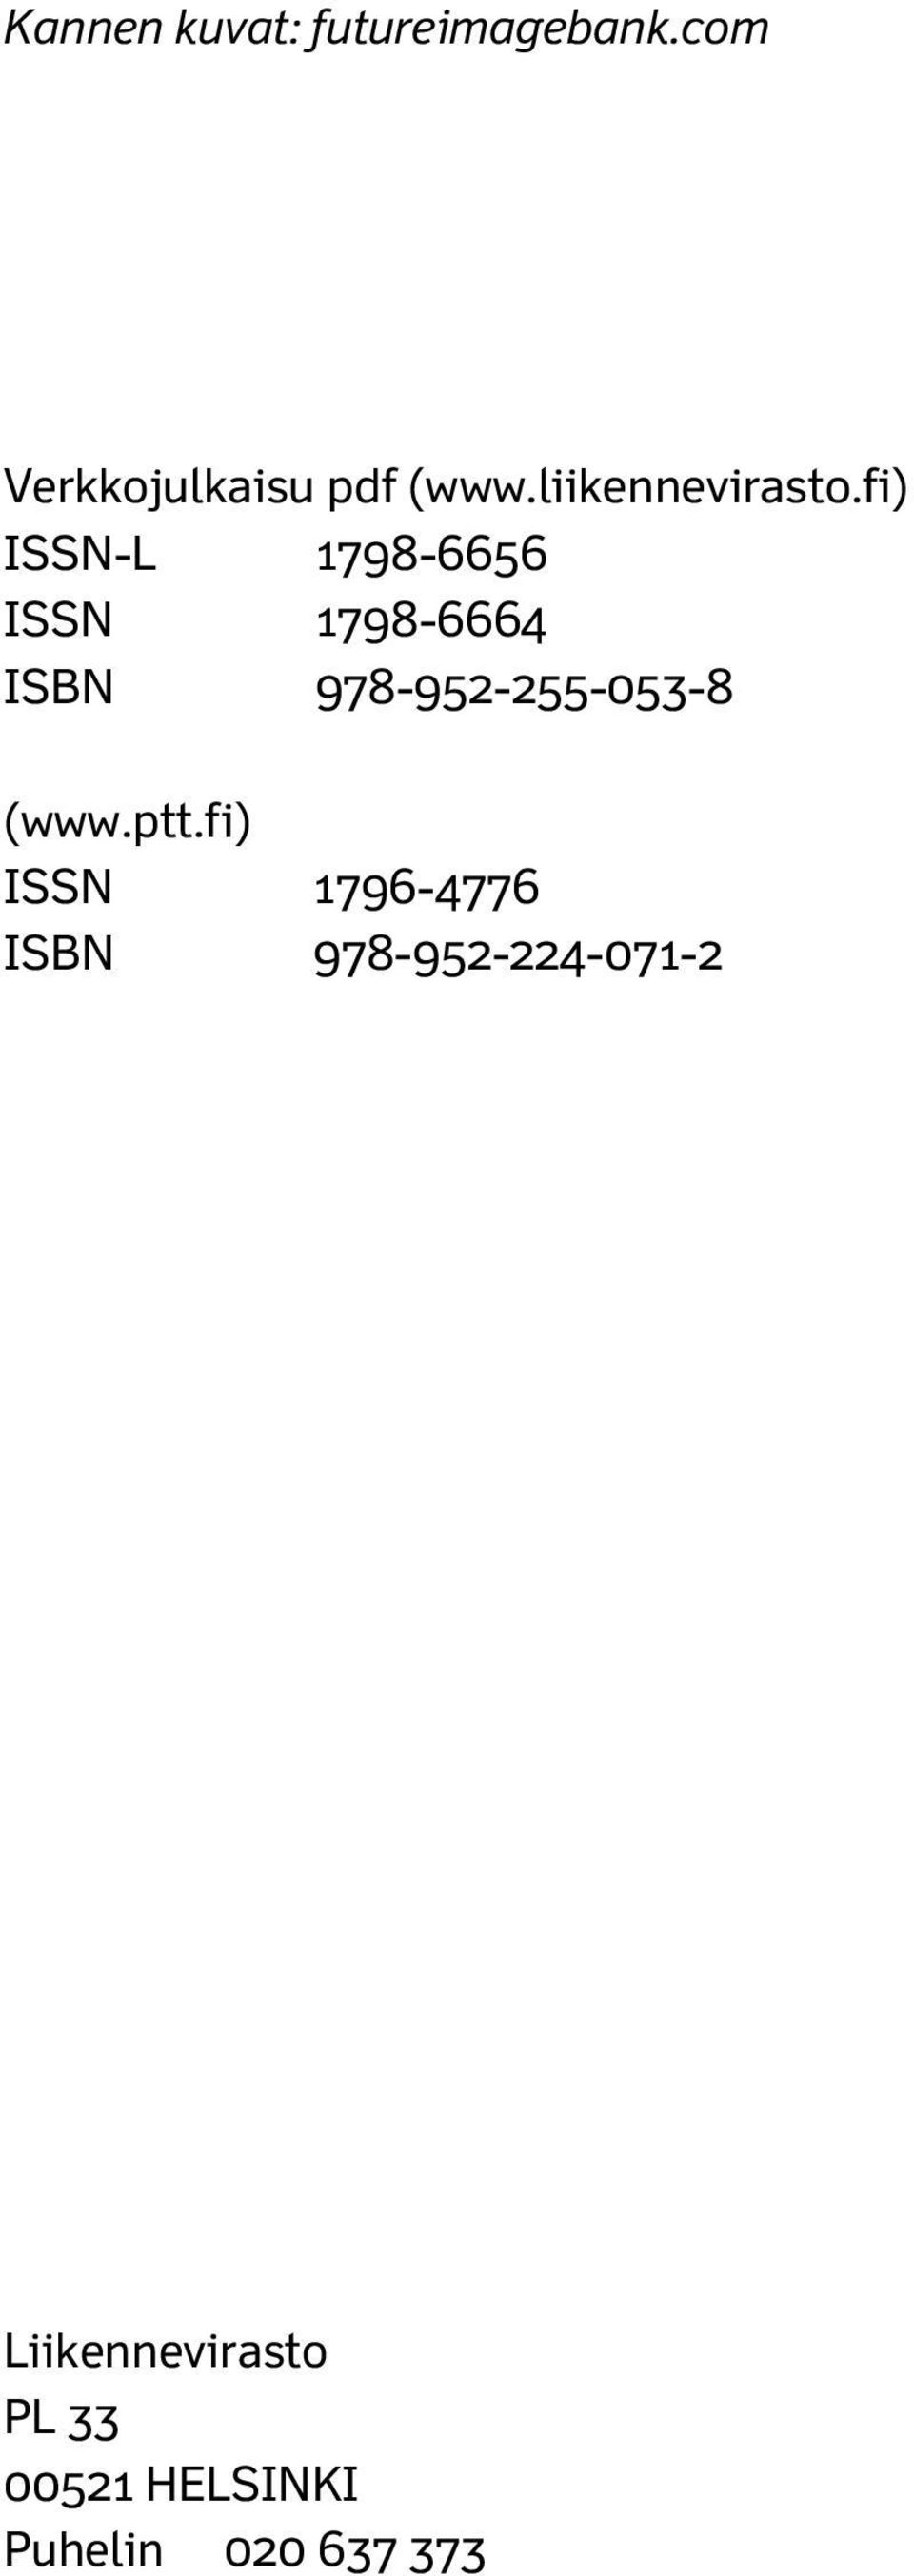 fi) ISSN-L 1798-6656 ISSN 1798-6664 ISBN 978-952-255-053-8